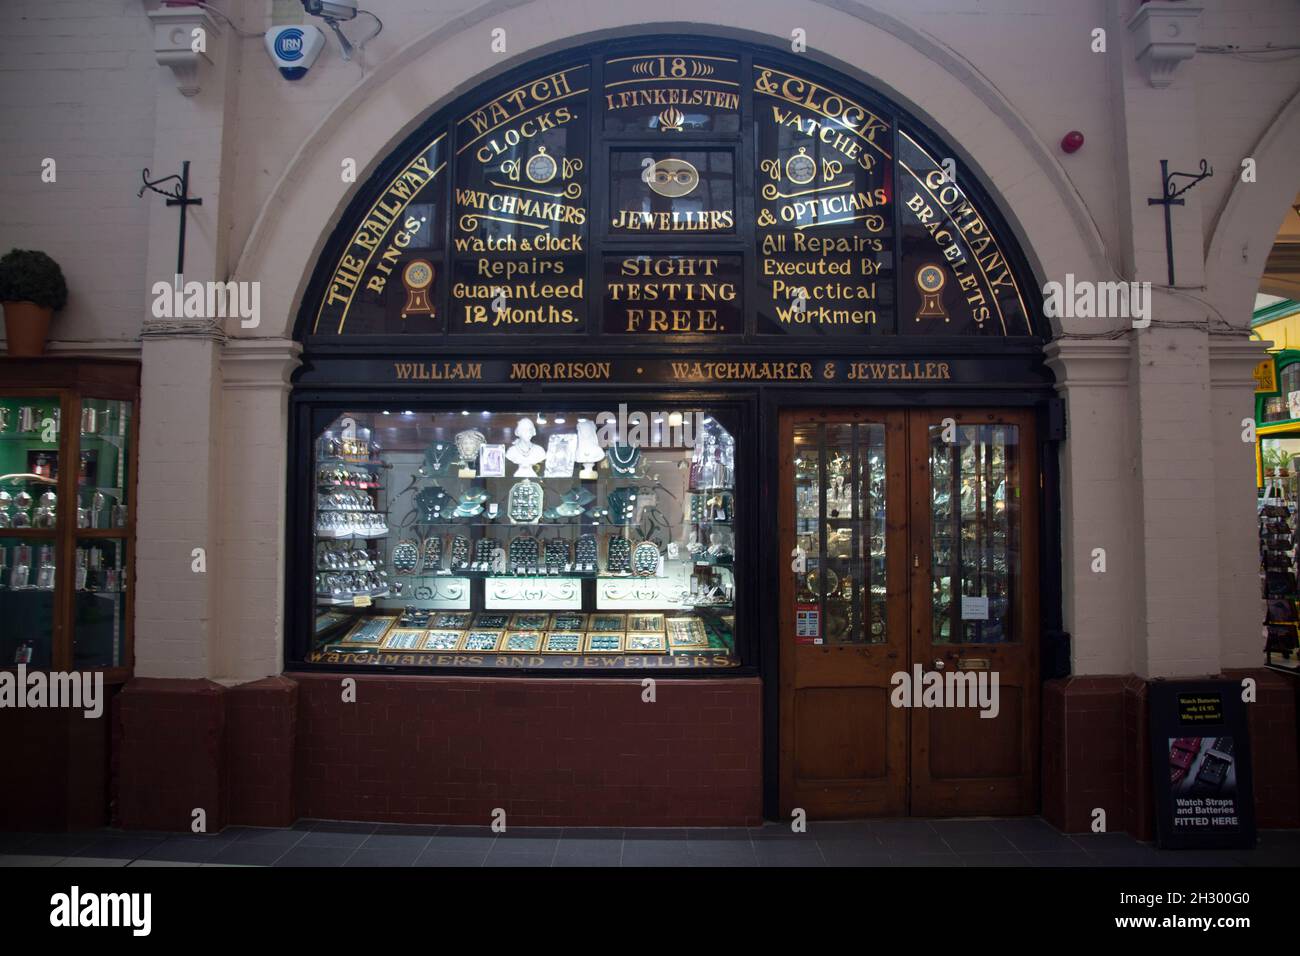 William Morrison Jewelry Shop nel mercato vittoriano, una galleria commerciale coperta, Inverness, Scozia Regno Unito Foto Stock